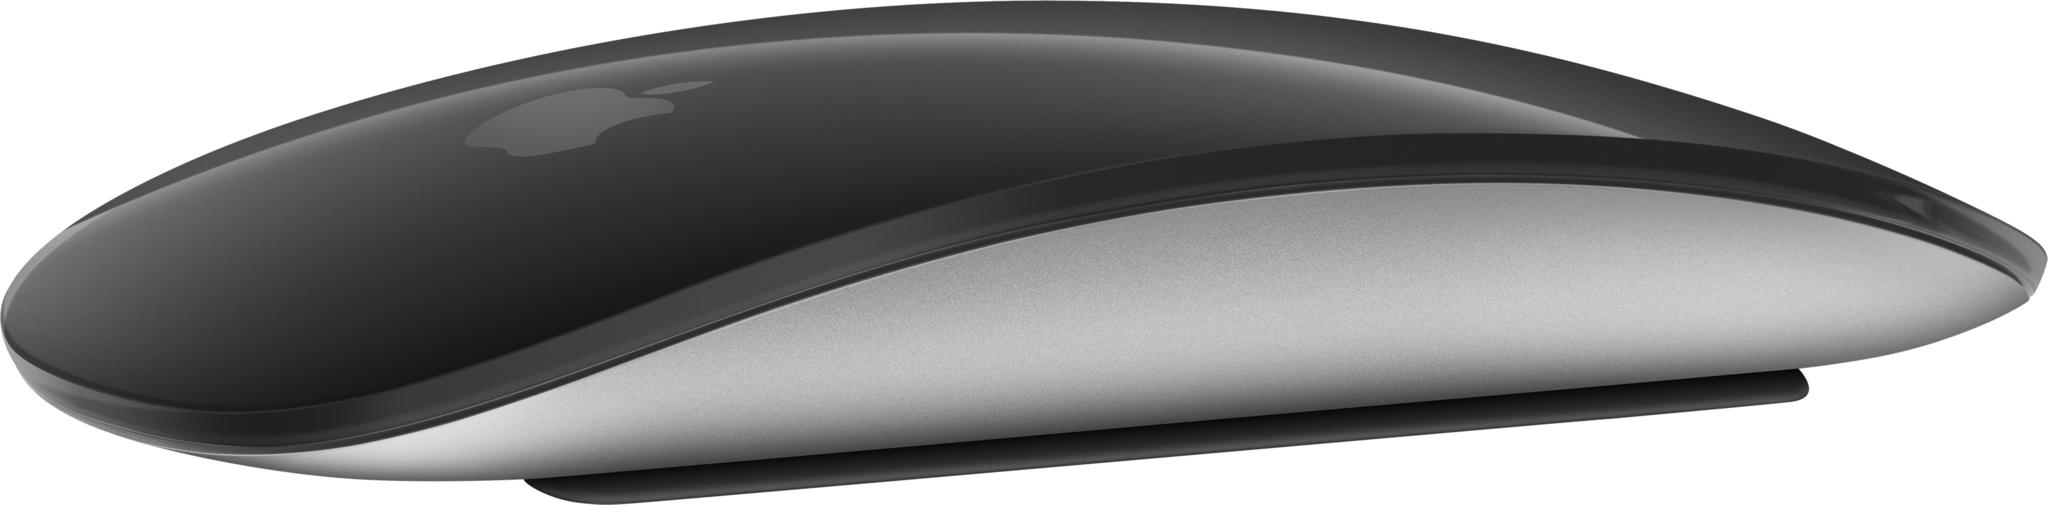 Apple Magic Mouse Muis Bluetooth Zwart